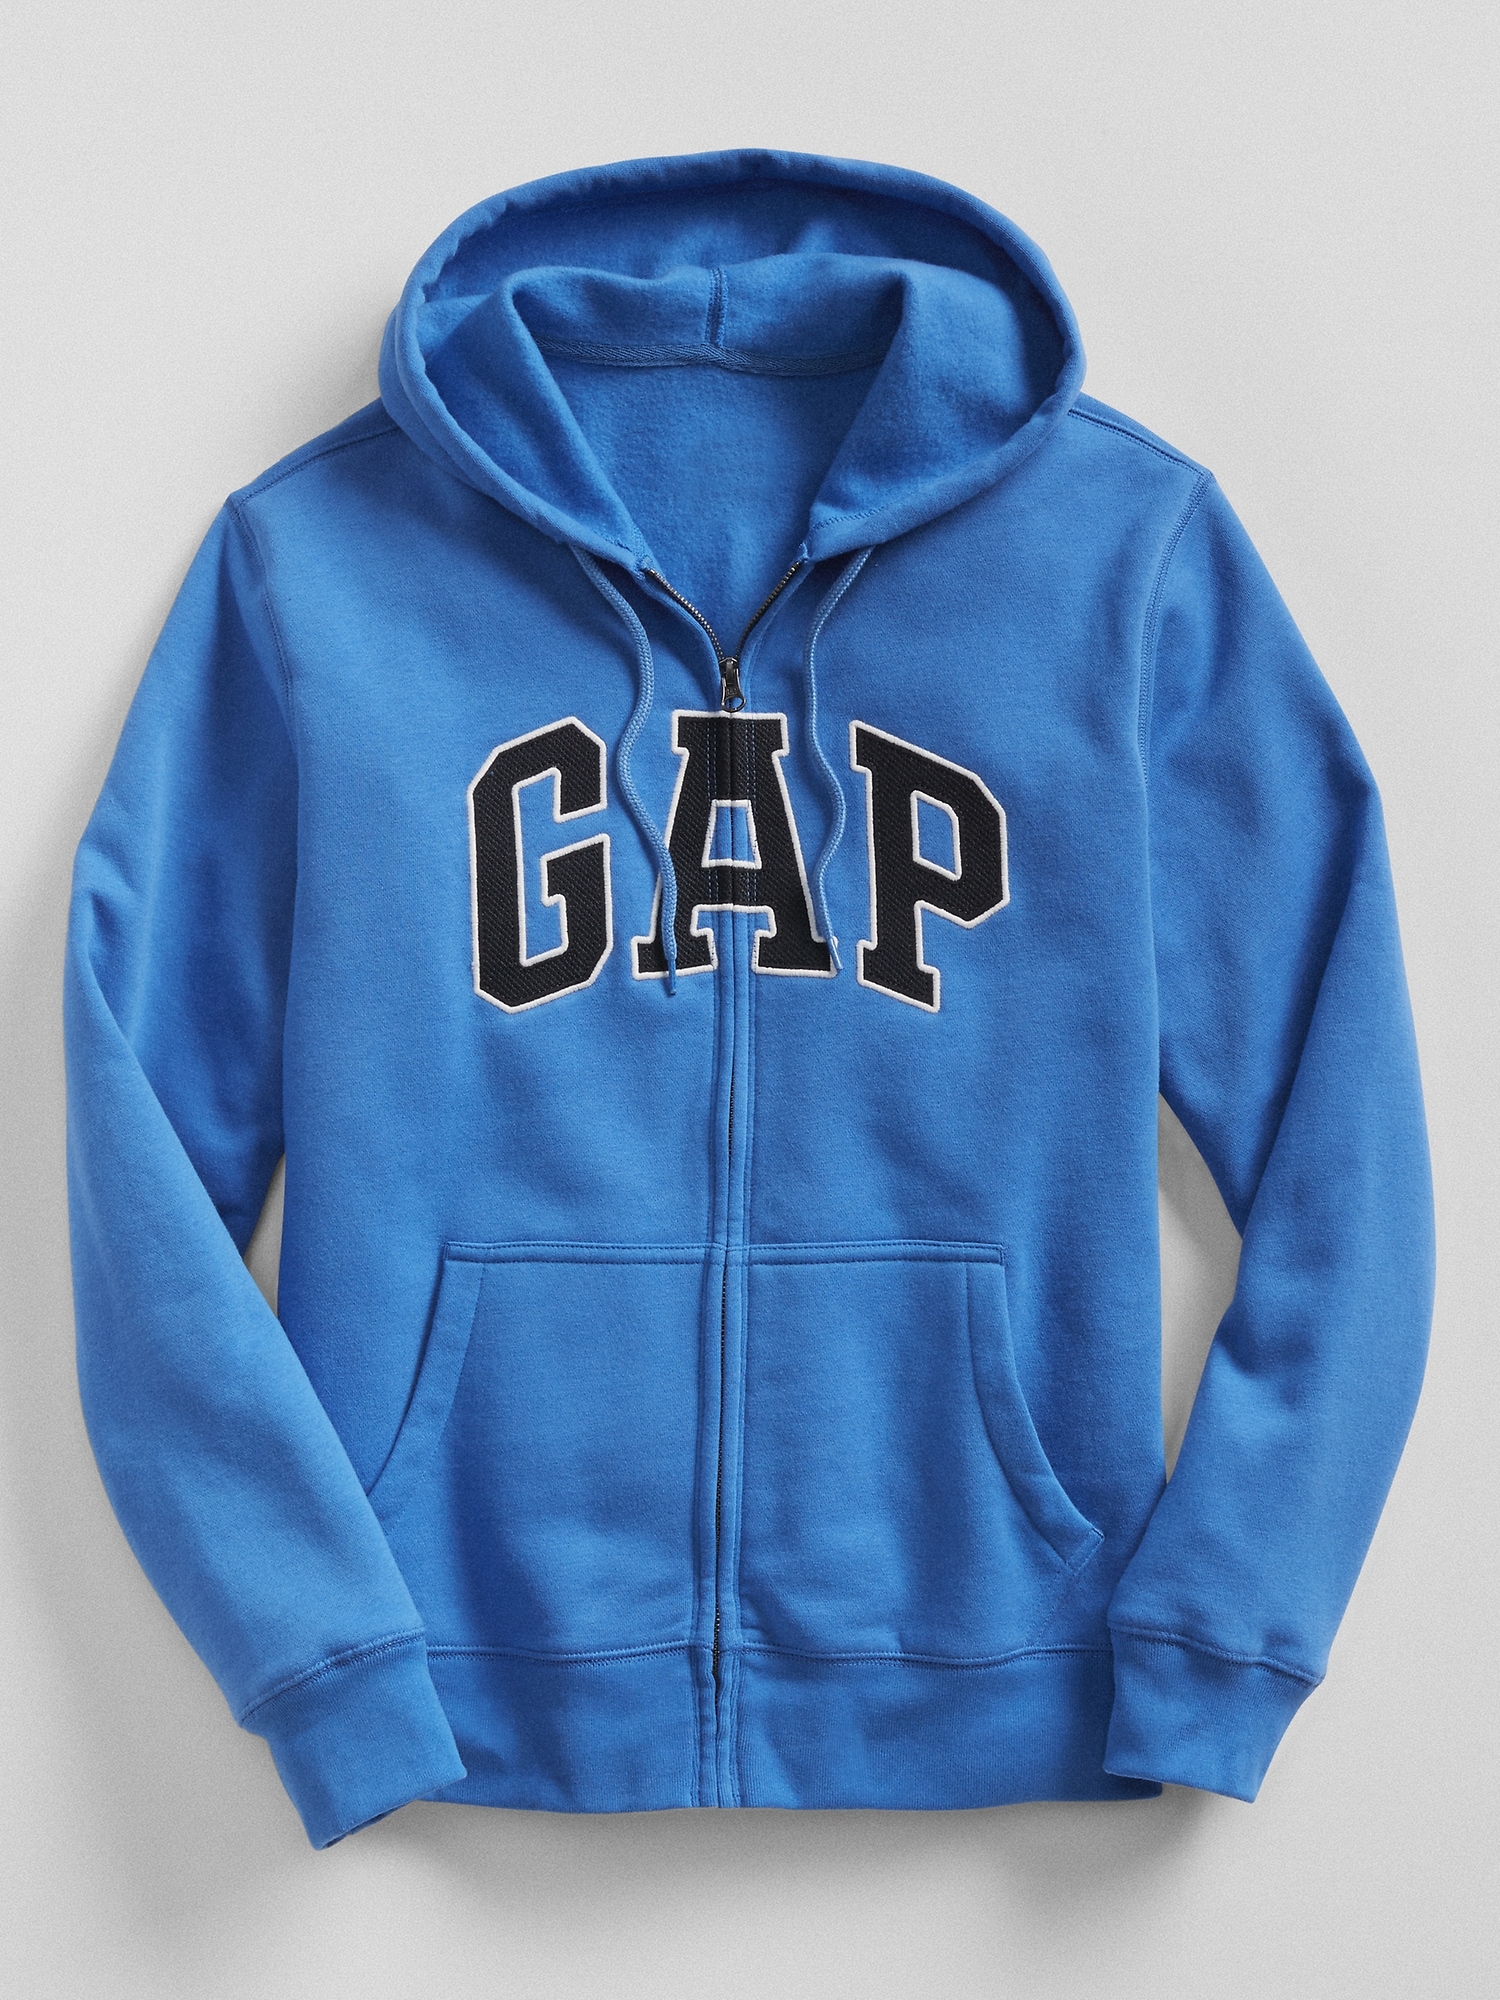 gap jacket blue